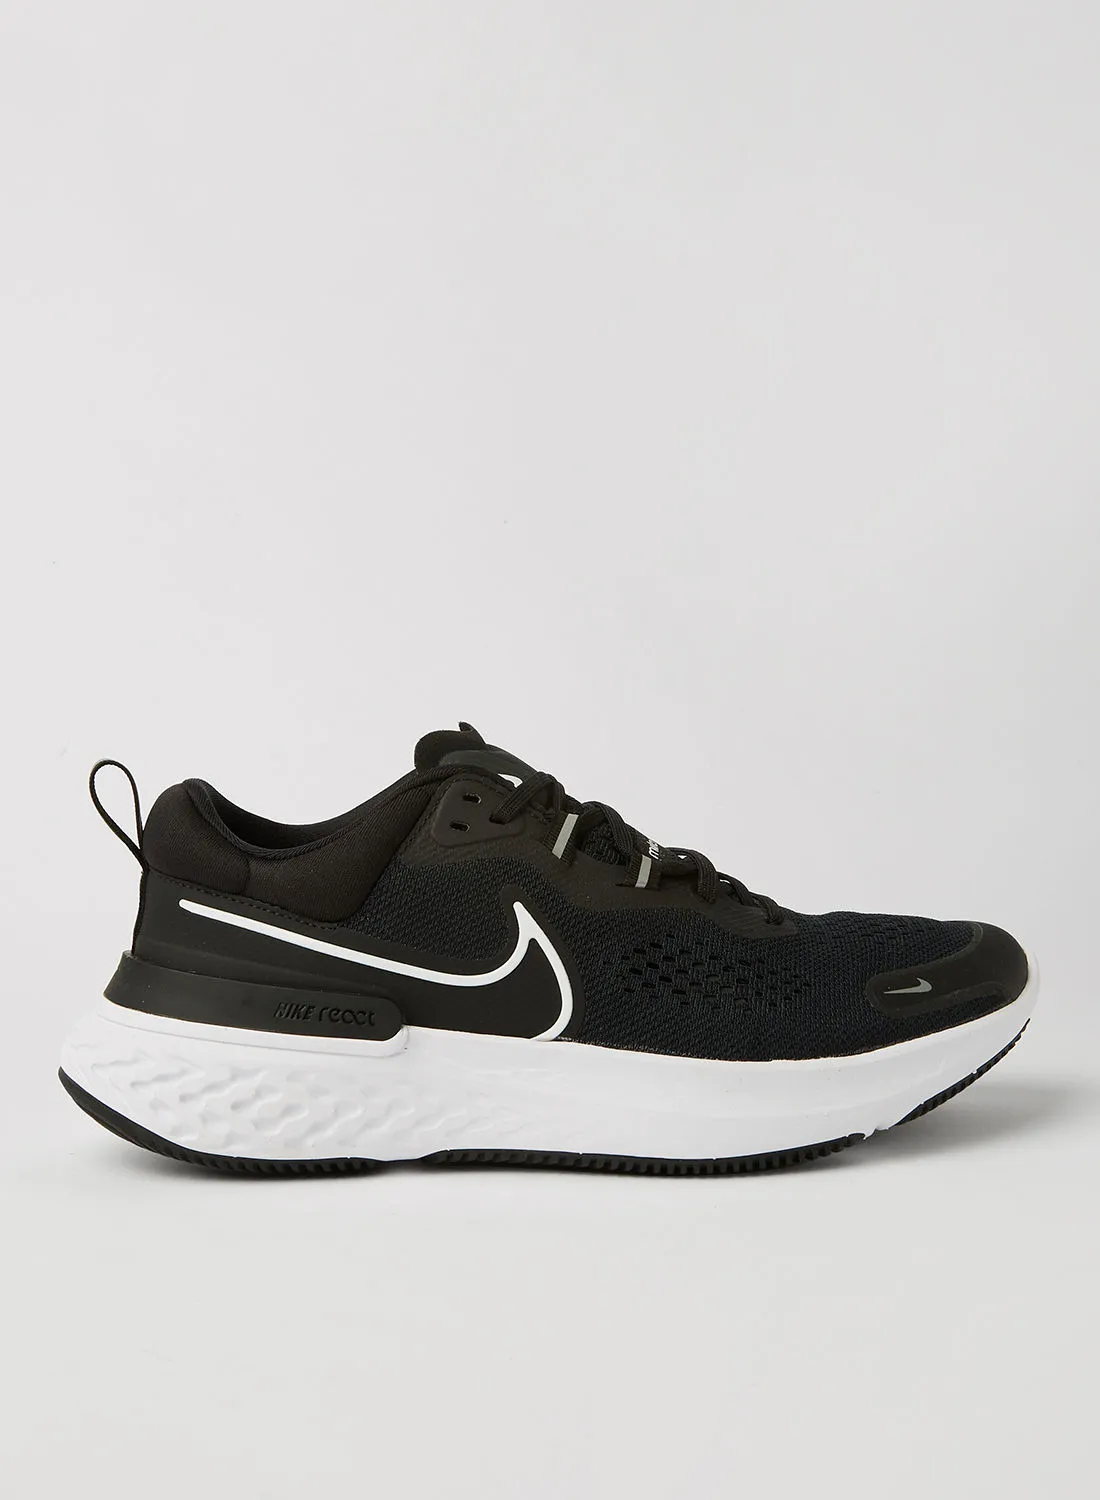 Nike React Miler 2 Running Shoes Black